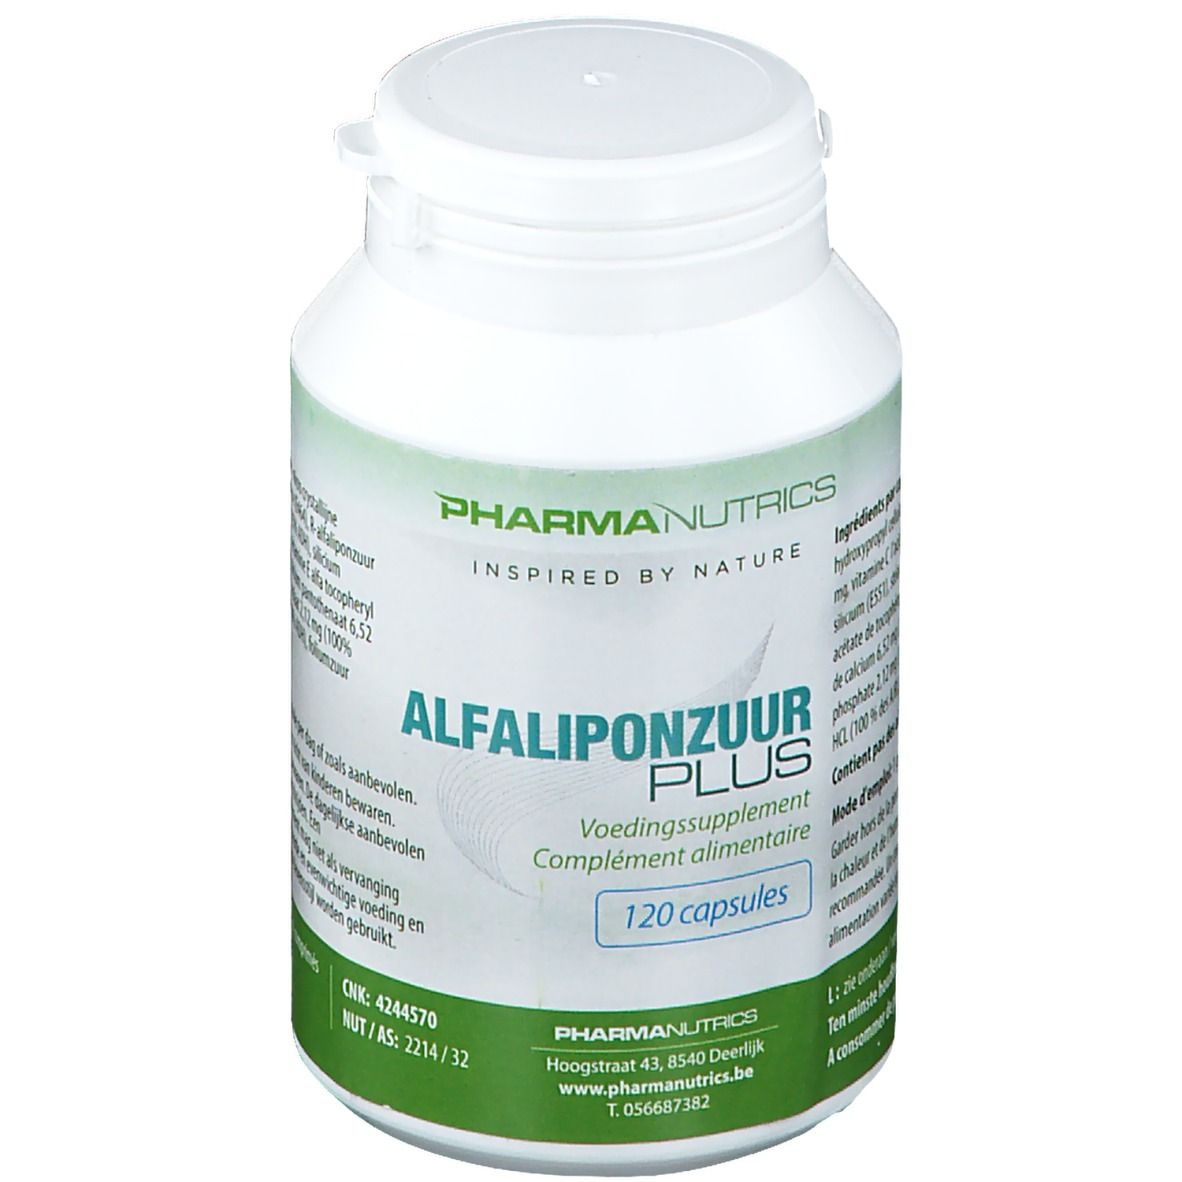 PharmaNutrics Alpha Lipoic Acid Plus